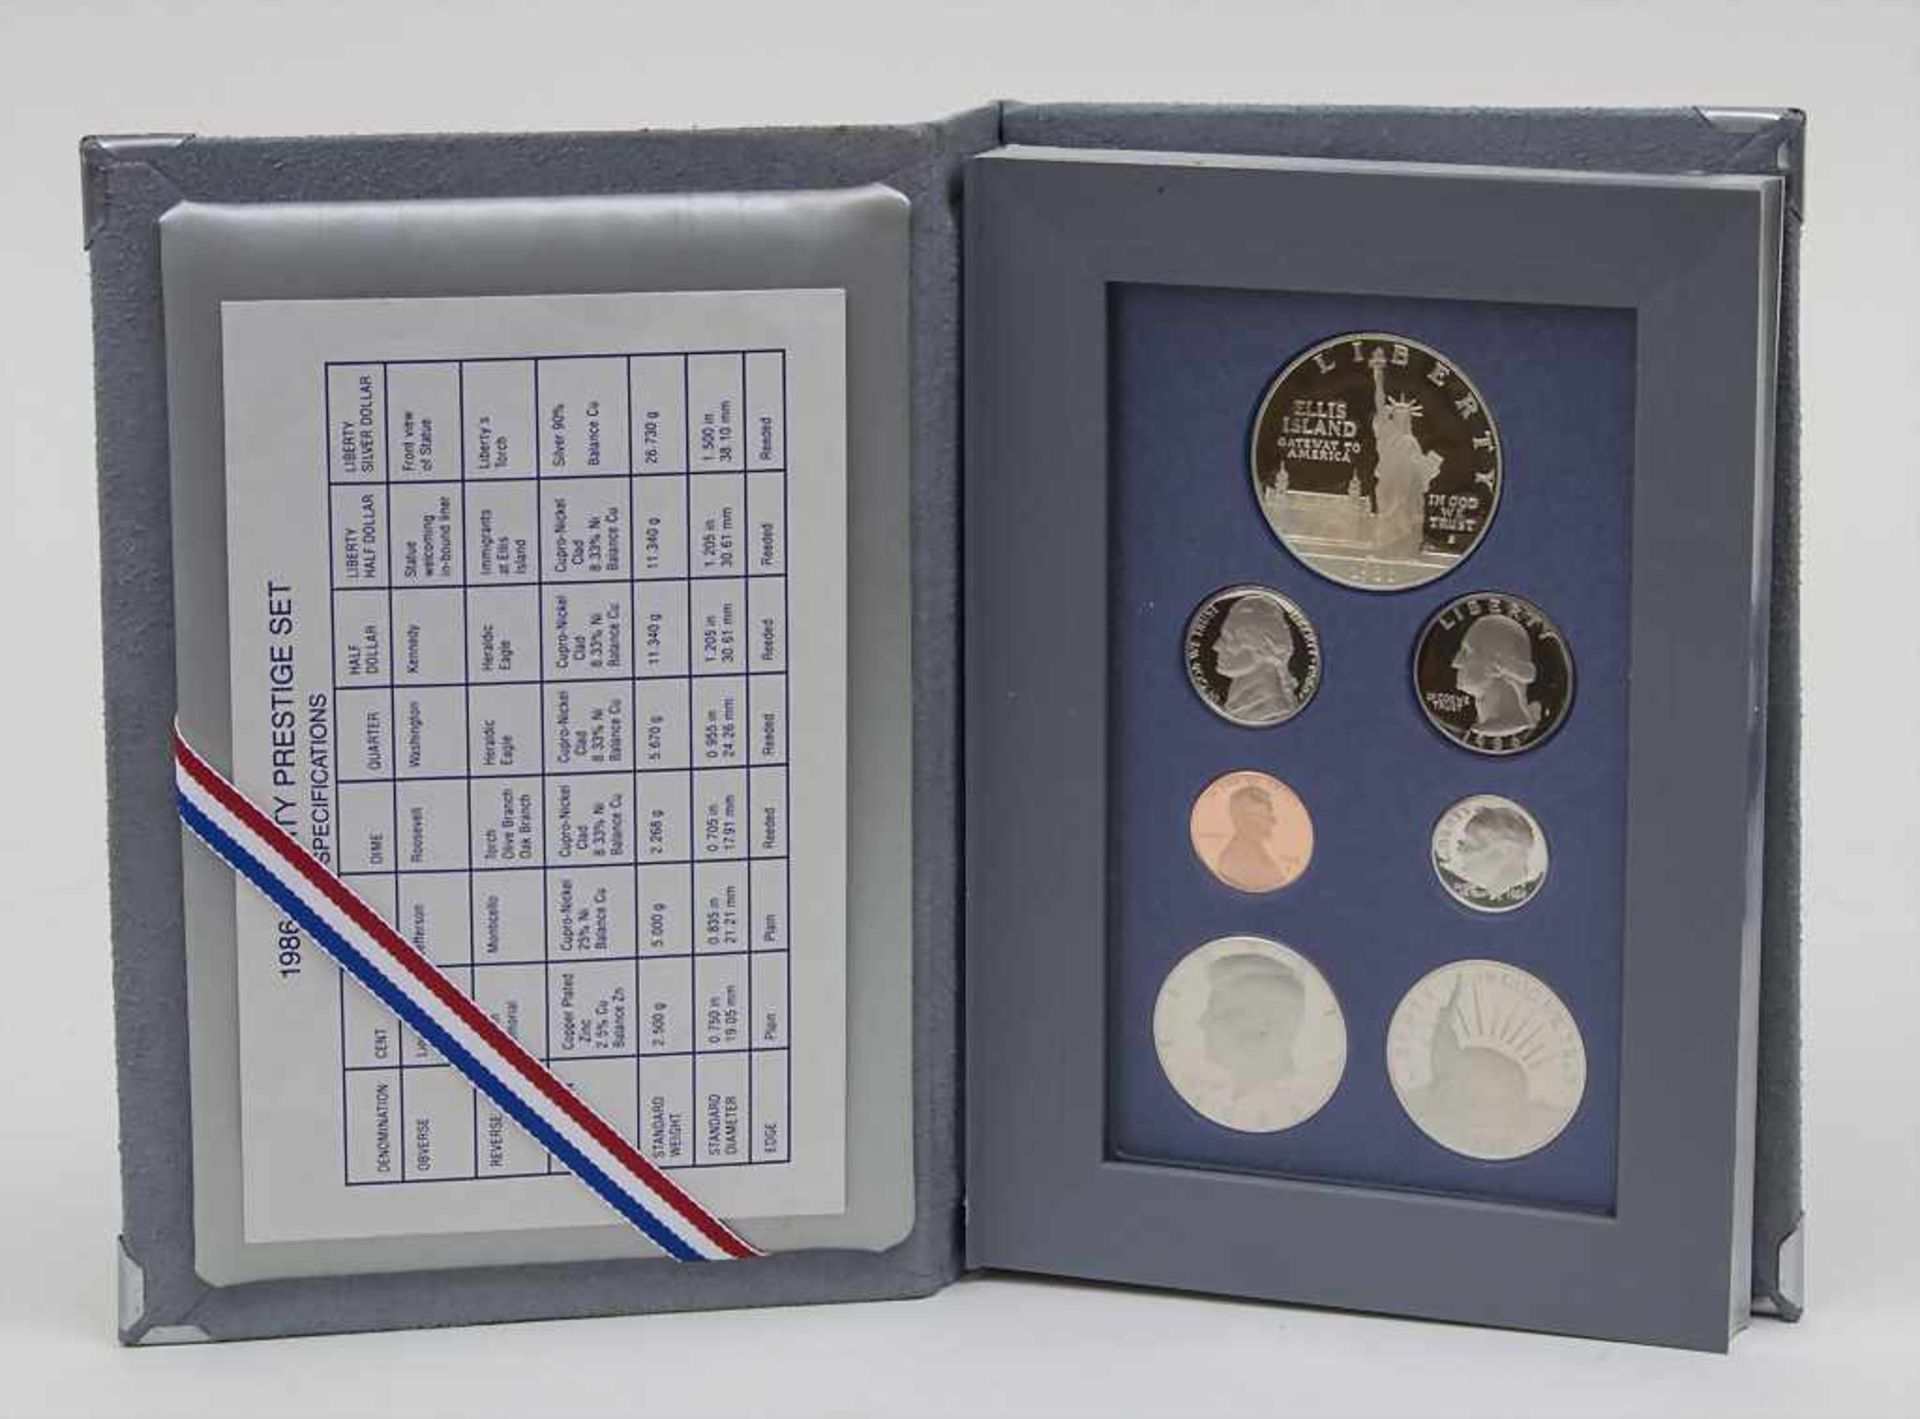 Münzsatz Ellis Island Freiheitsstatue / Liberty Prestige Set coins Ellis Island Liberty, USA 1986